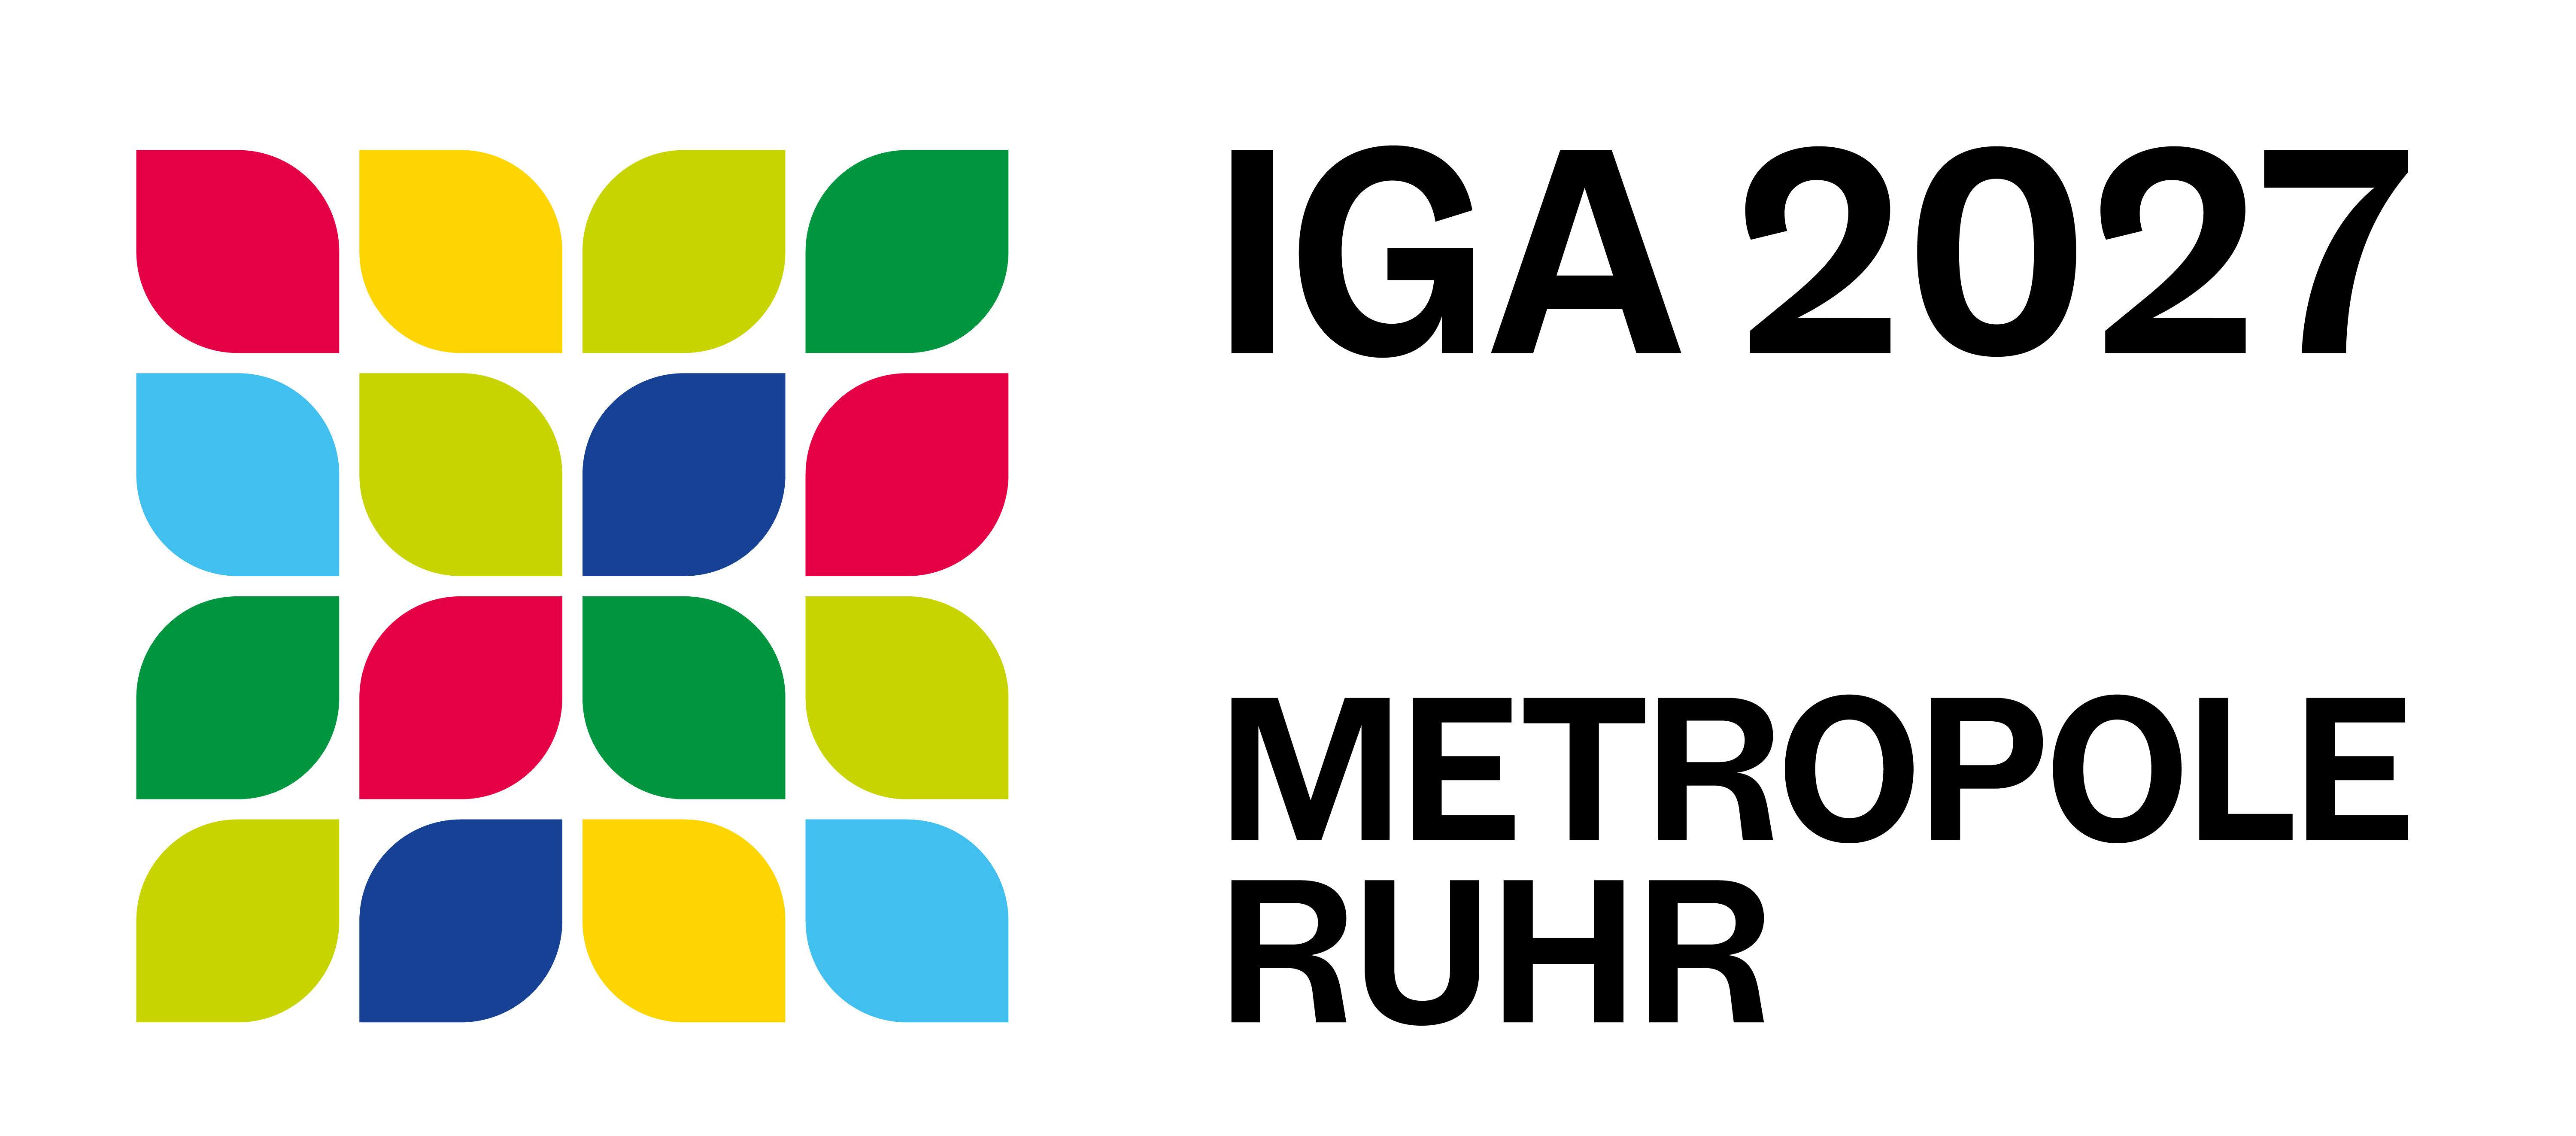 16 farbige Blütenblätter mit Schriftzug Internationale Gartenausstellung 2027 - Metropole Ruhr, die das quadratische Logo der IGA 2027 bilden